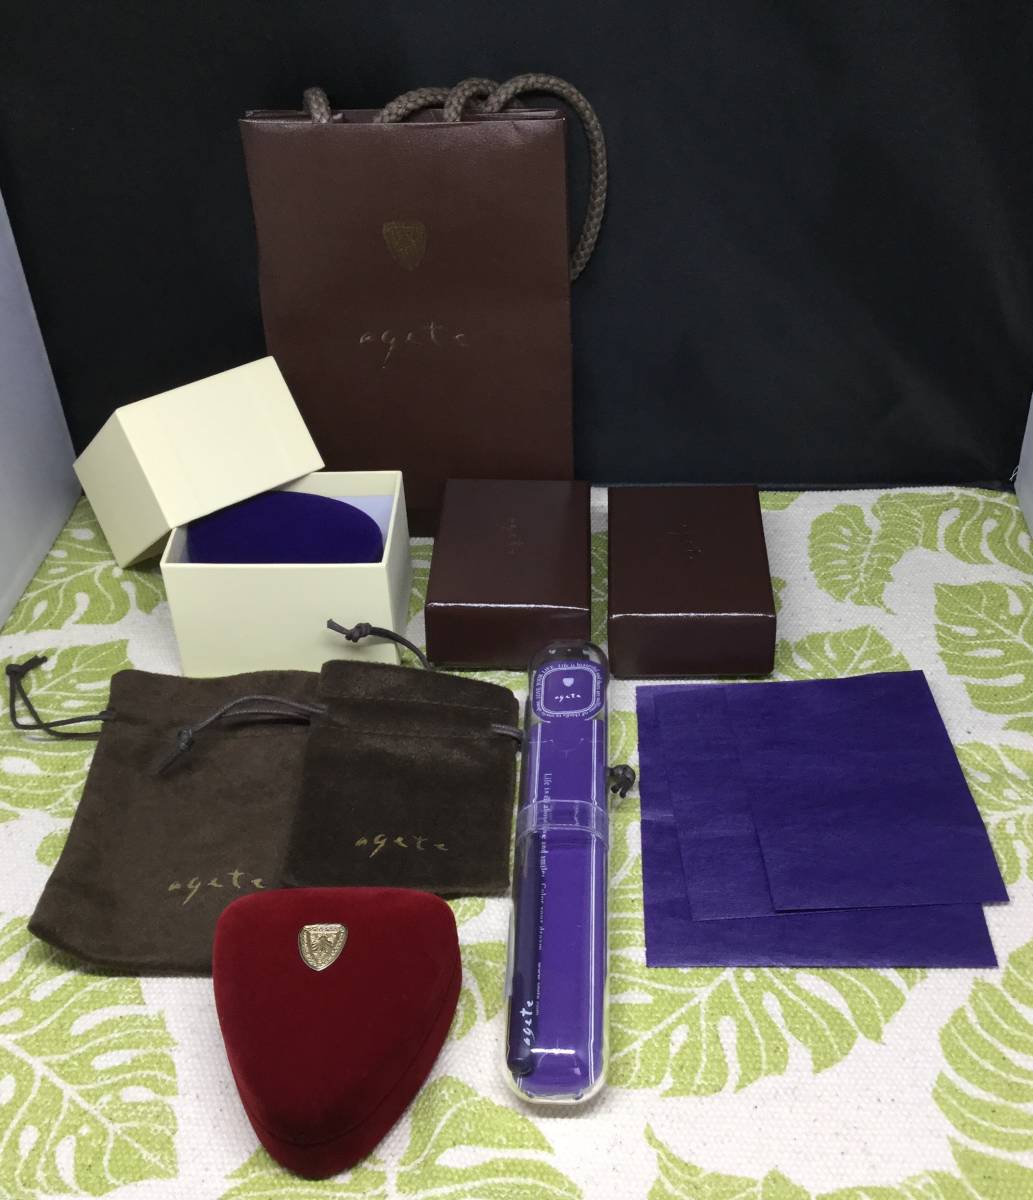 [X] agete Agete box коробка пустой коробка ювелирные изделия кейс сумка браслет assist бумажный пакет фиолетовый защита пакет 